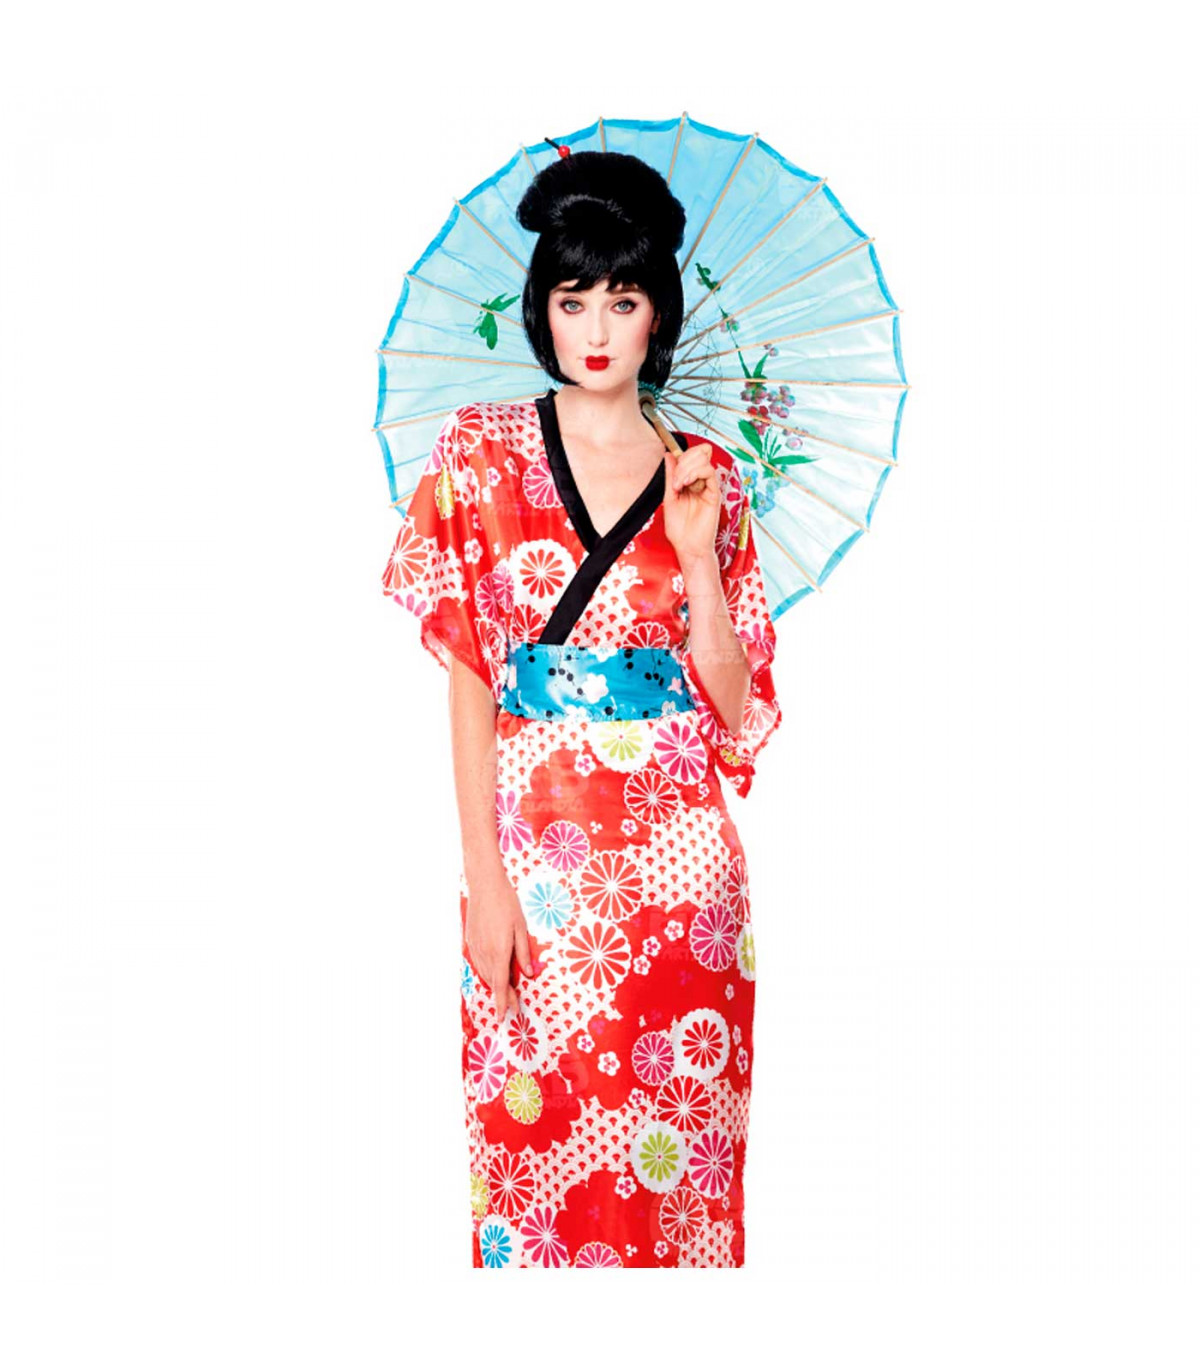 Disfraz de geisha para mujer: Disfraces adultos,y disfraces